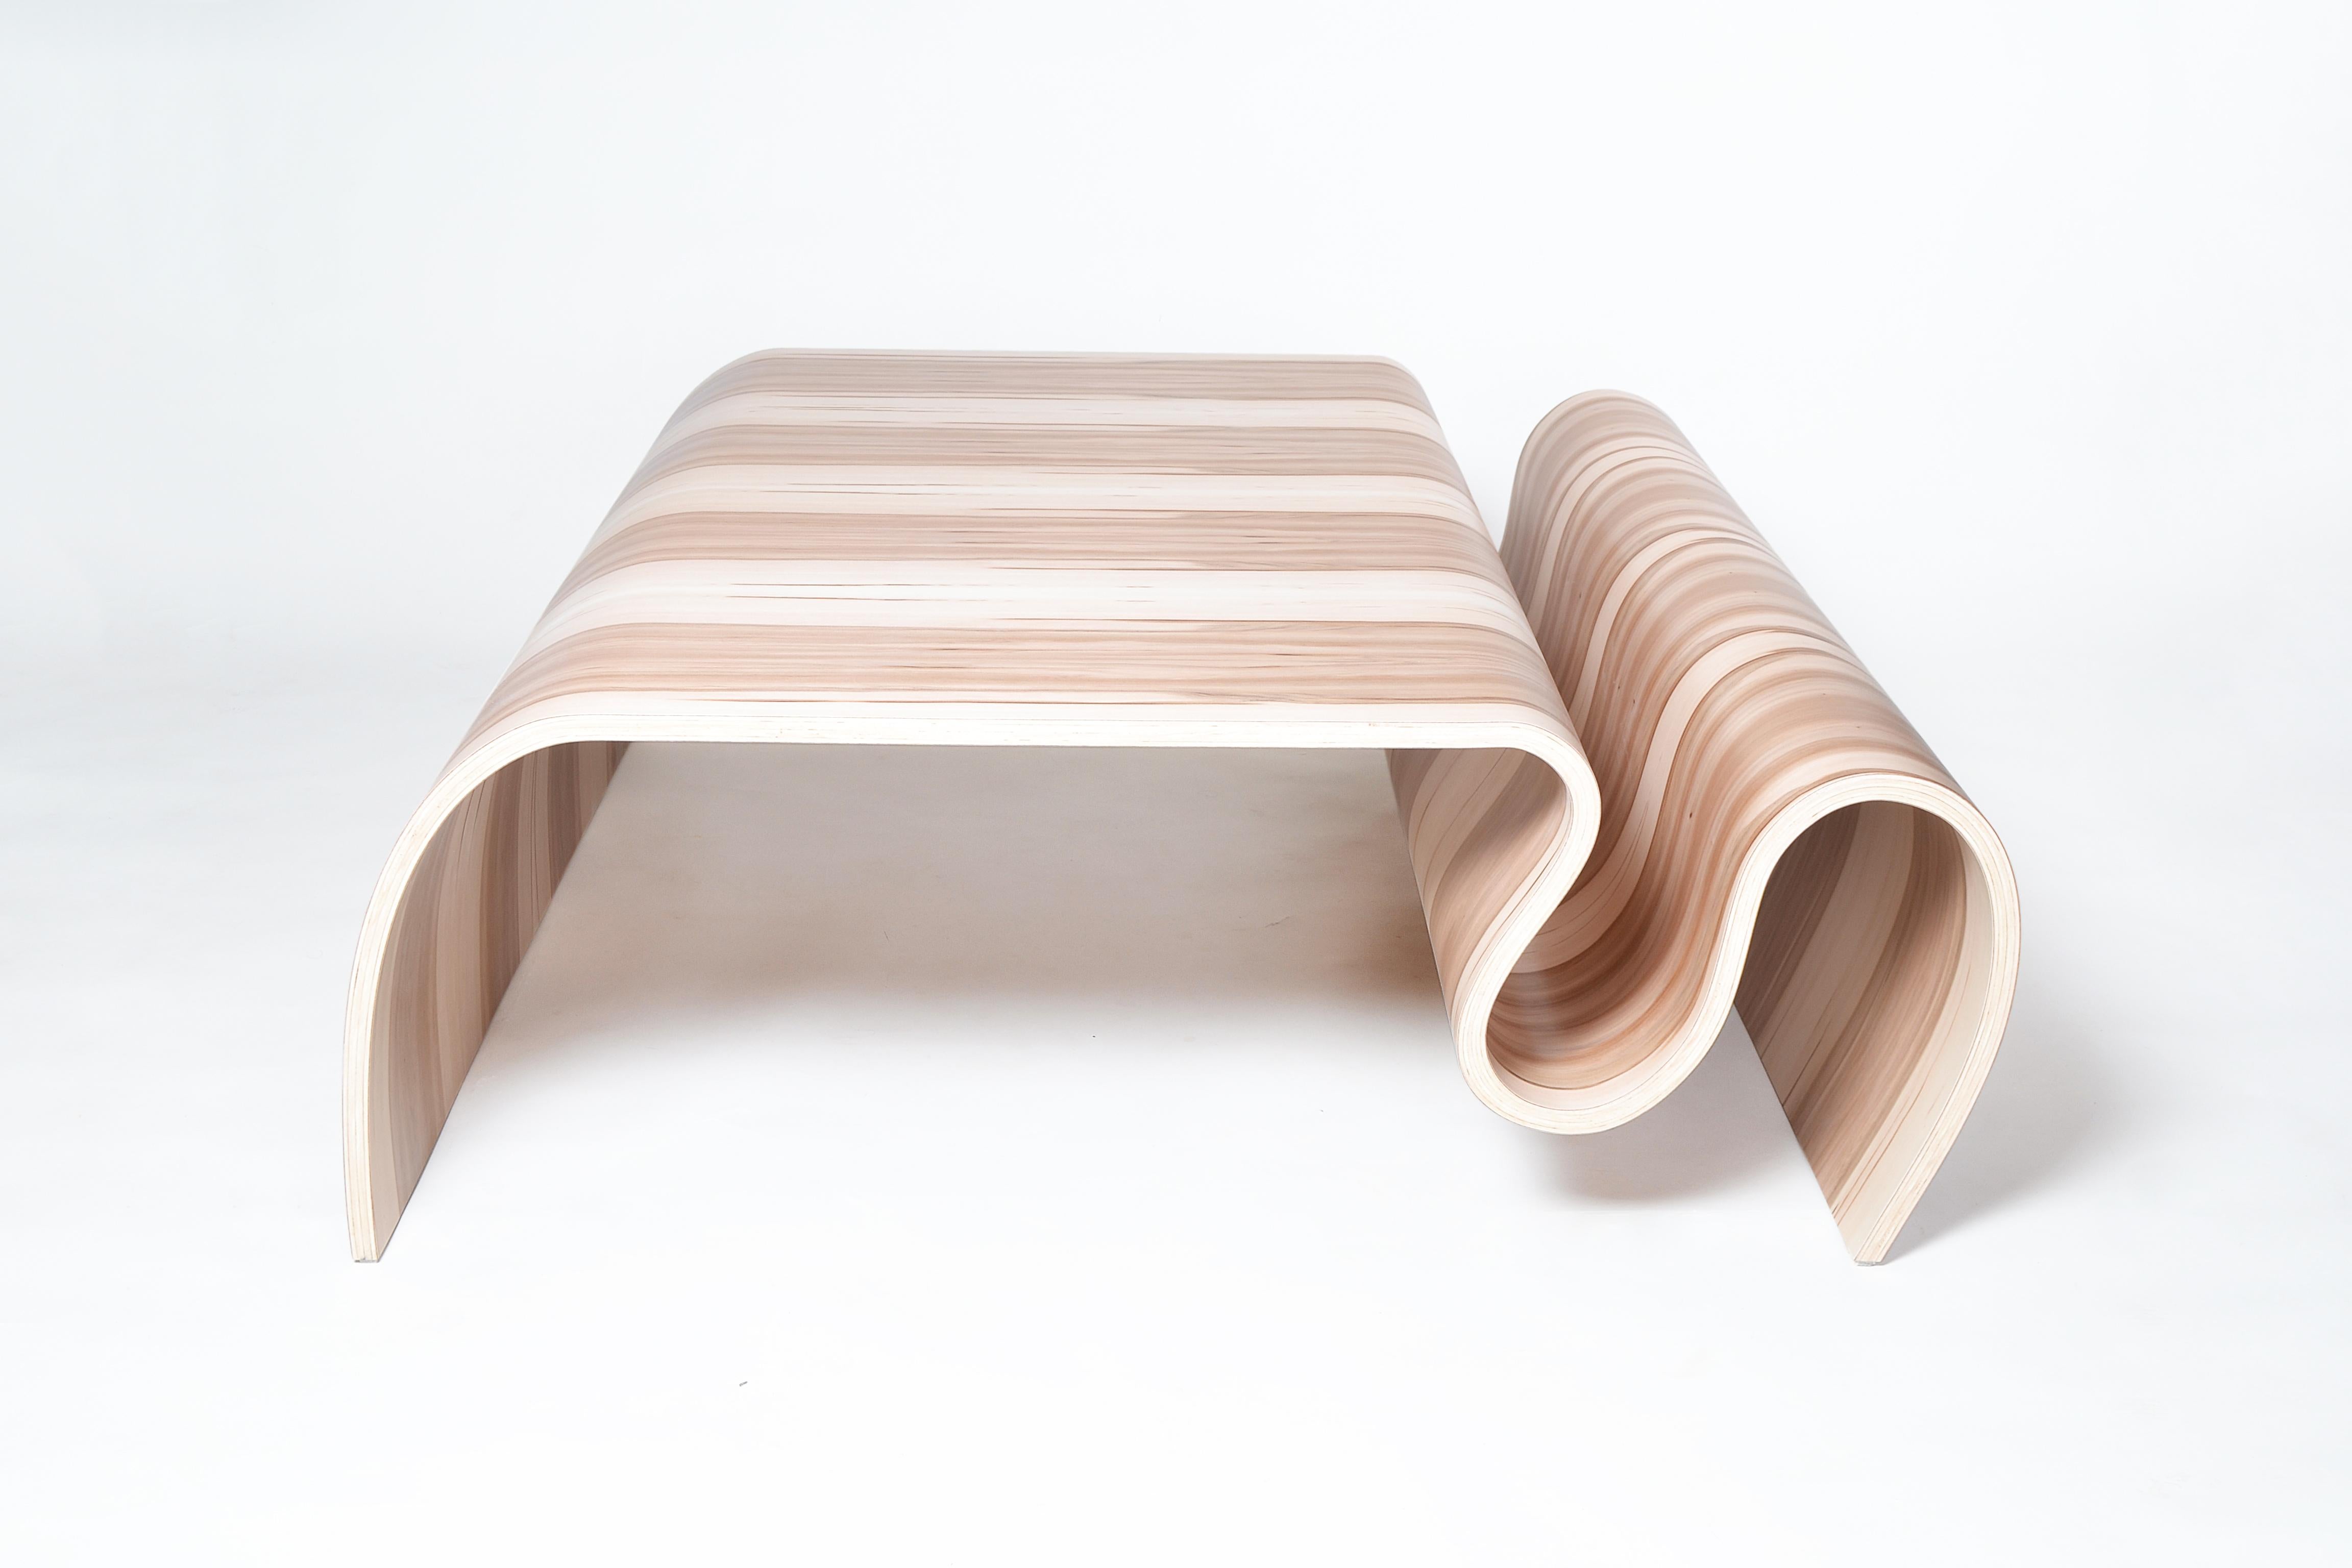 Das Design dieses Tisches ist sehr einzigartig und ungewöhnlich, es wäre ein großer Hauch von Modernität in Ihrem Haus Design.
Dieser Couchtisch ist aus laminiertem gebogenem Sperrholz und Sweet Gum Furnier gefertigt.
Gesamt: 16